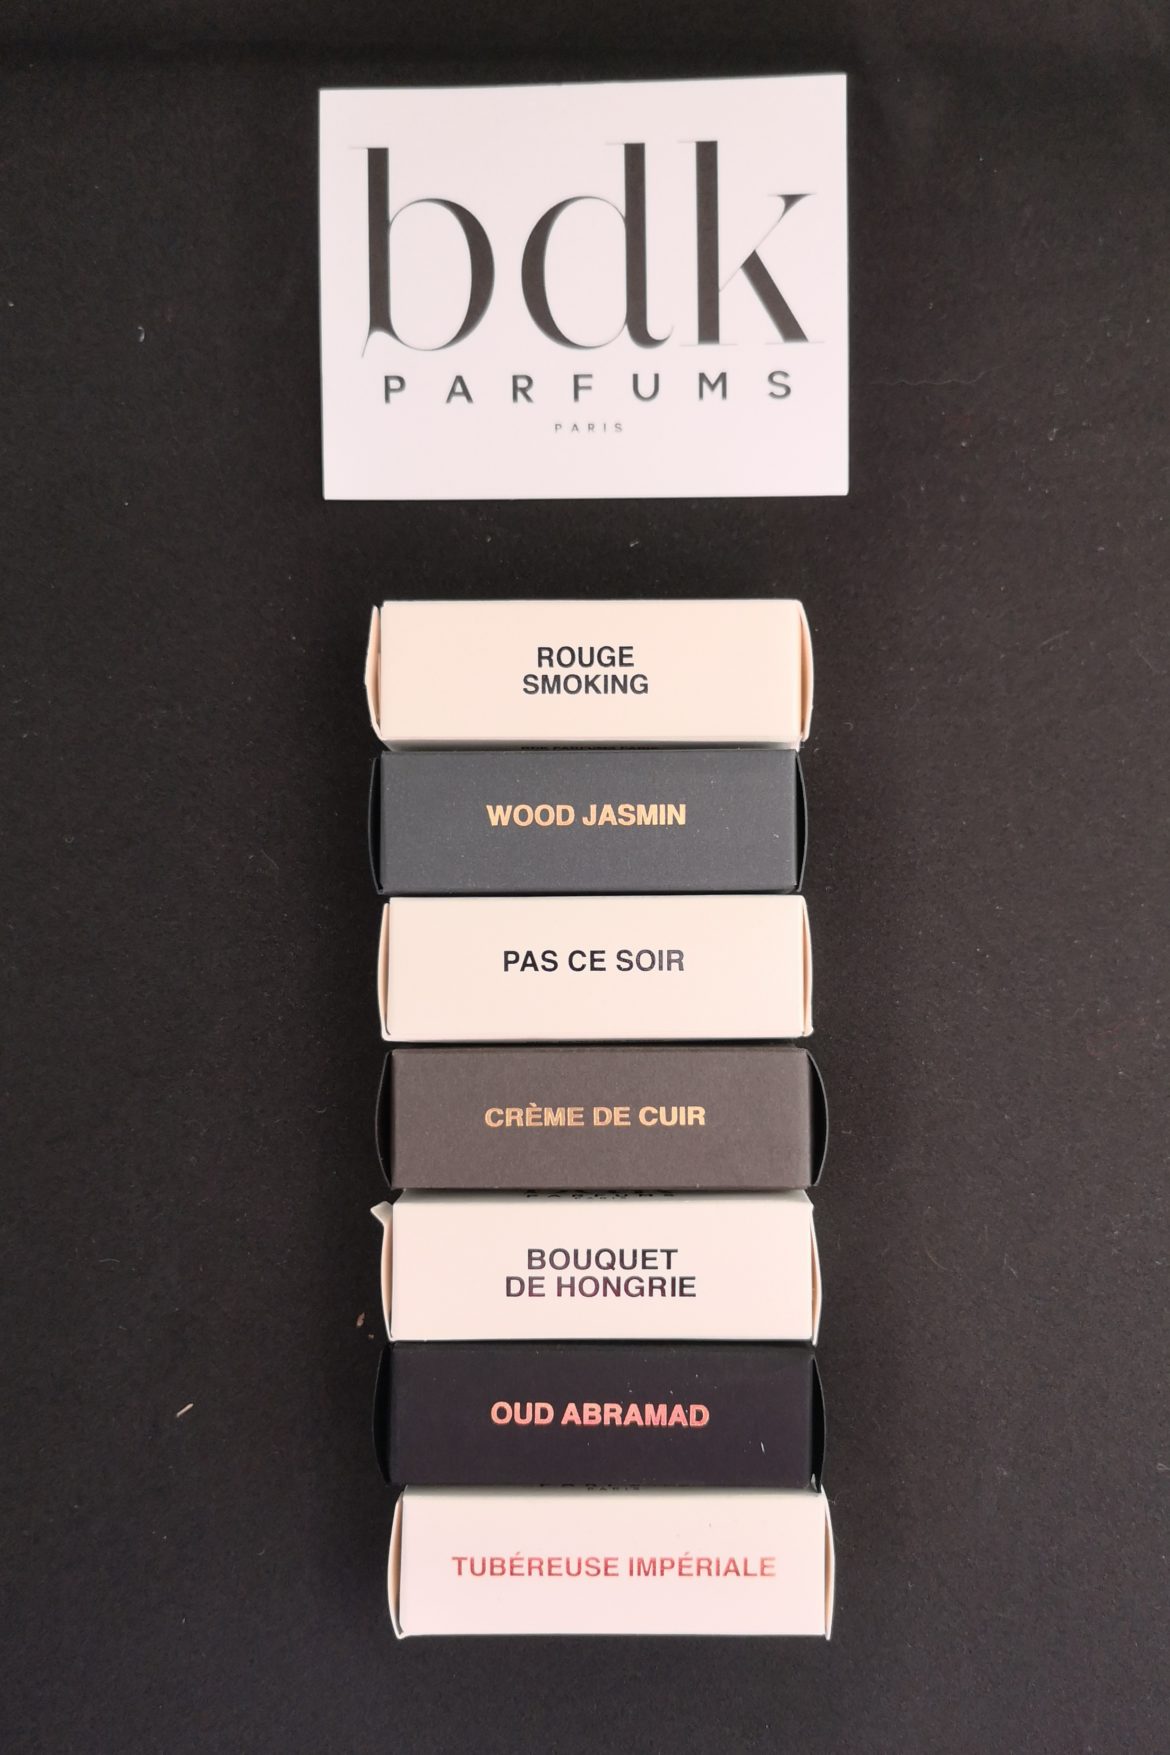 BDK parfums: Collections parisienne et matière - La plume parfumée